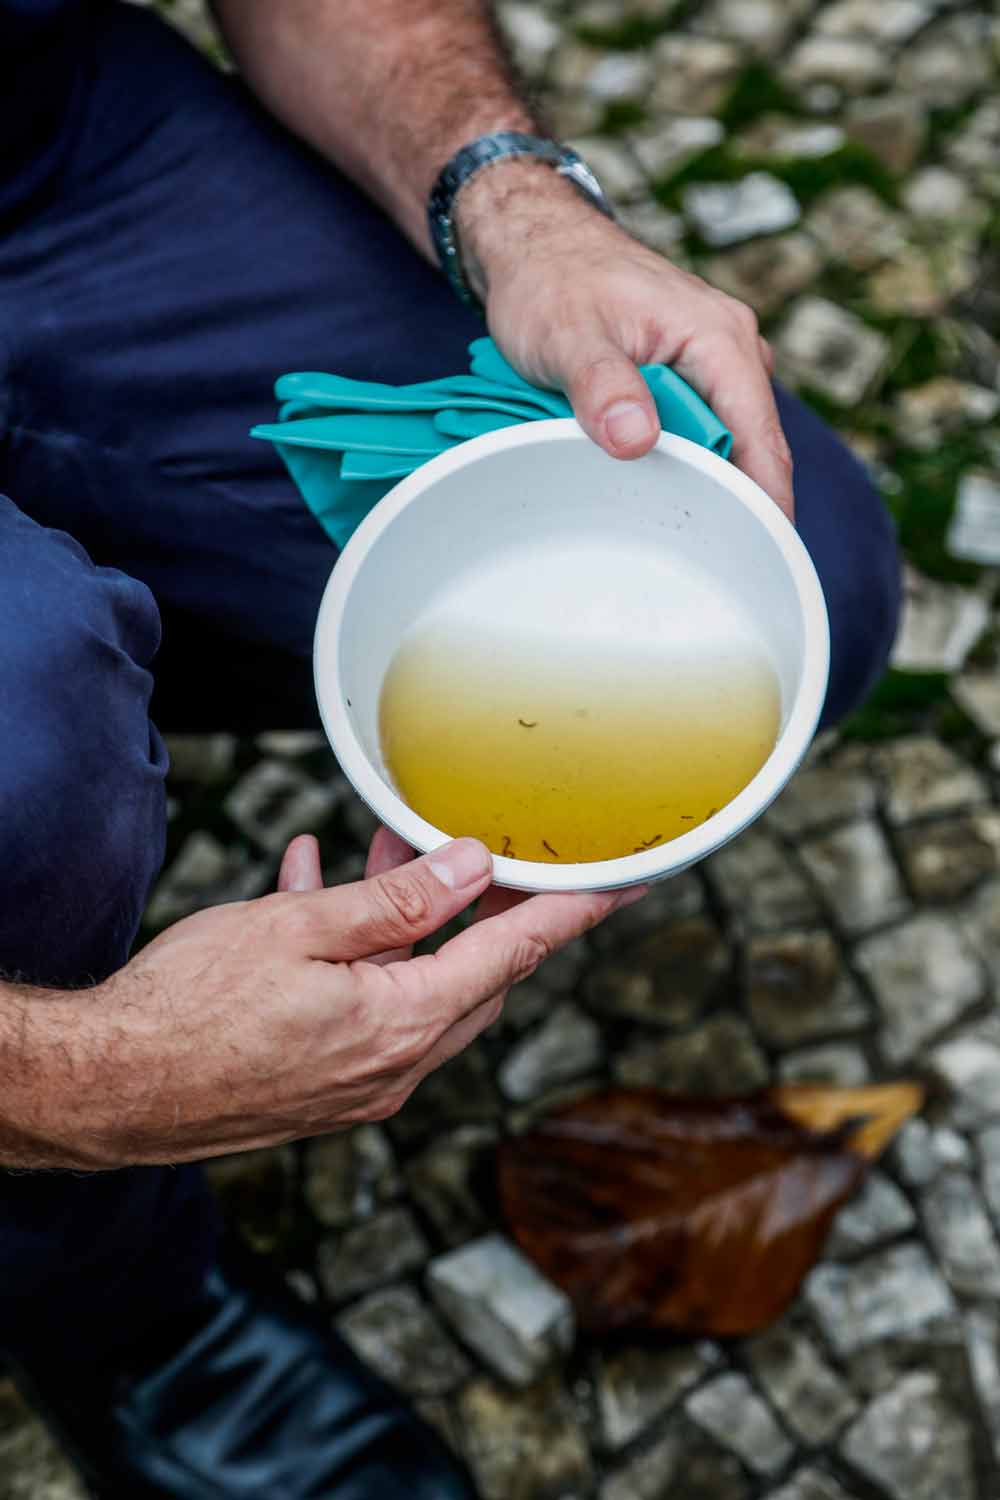 CRIADOURO - Água parada: 75% dos focos de mosquitos estão nas residências